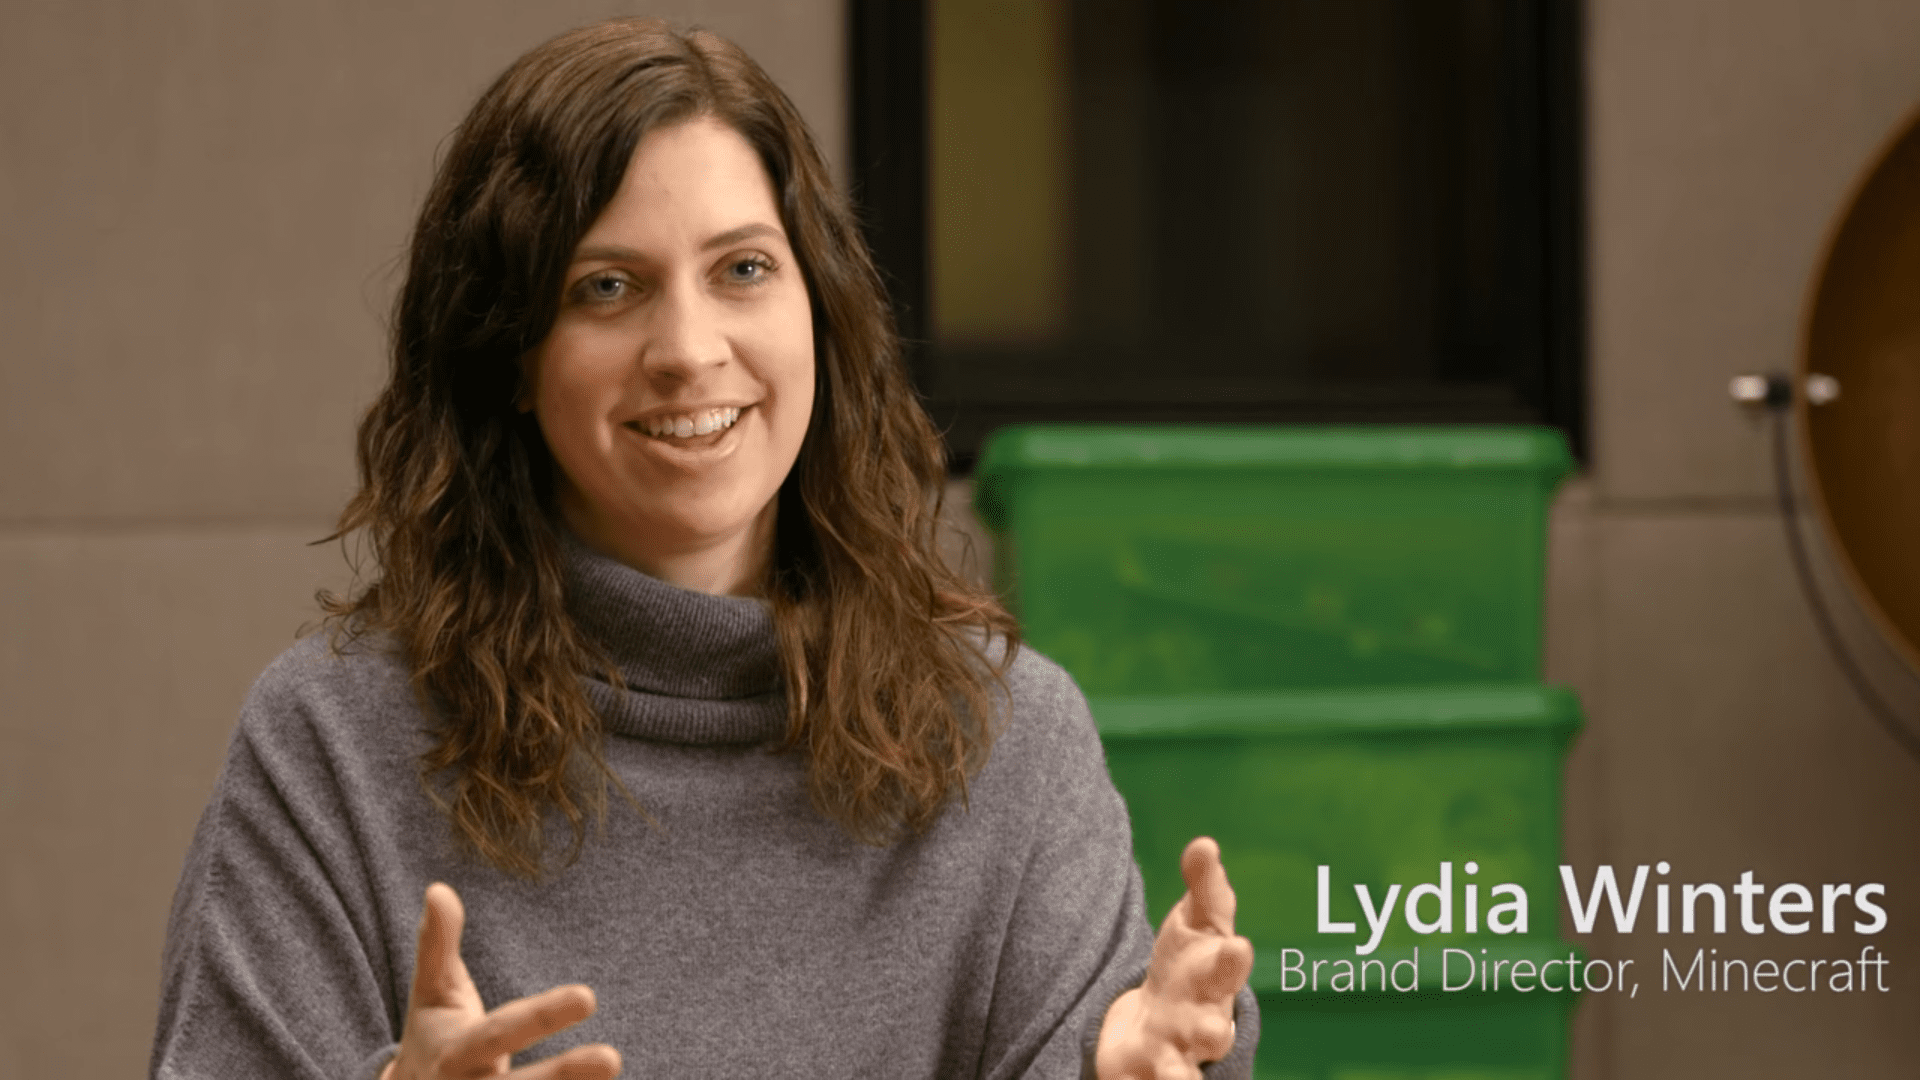 Lydia Winters, ředitel značky, Minecraft